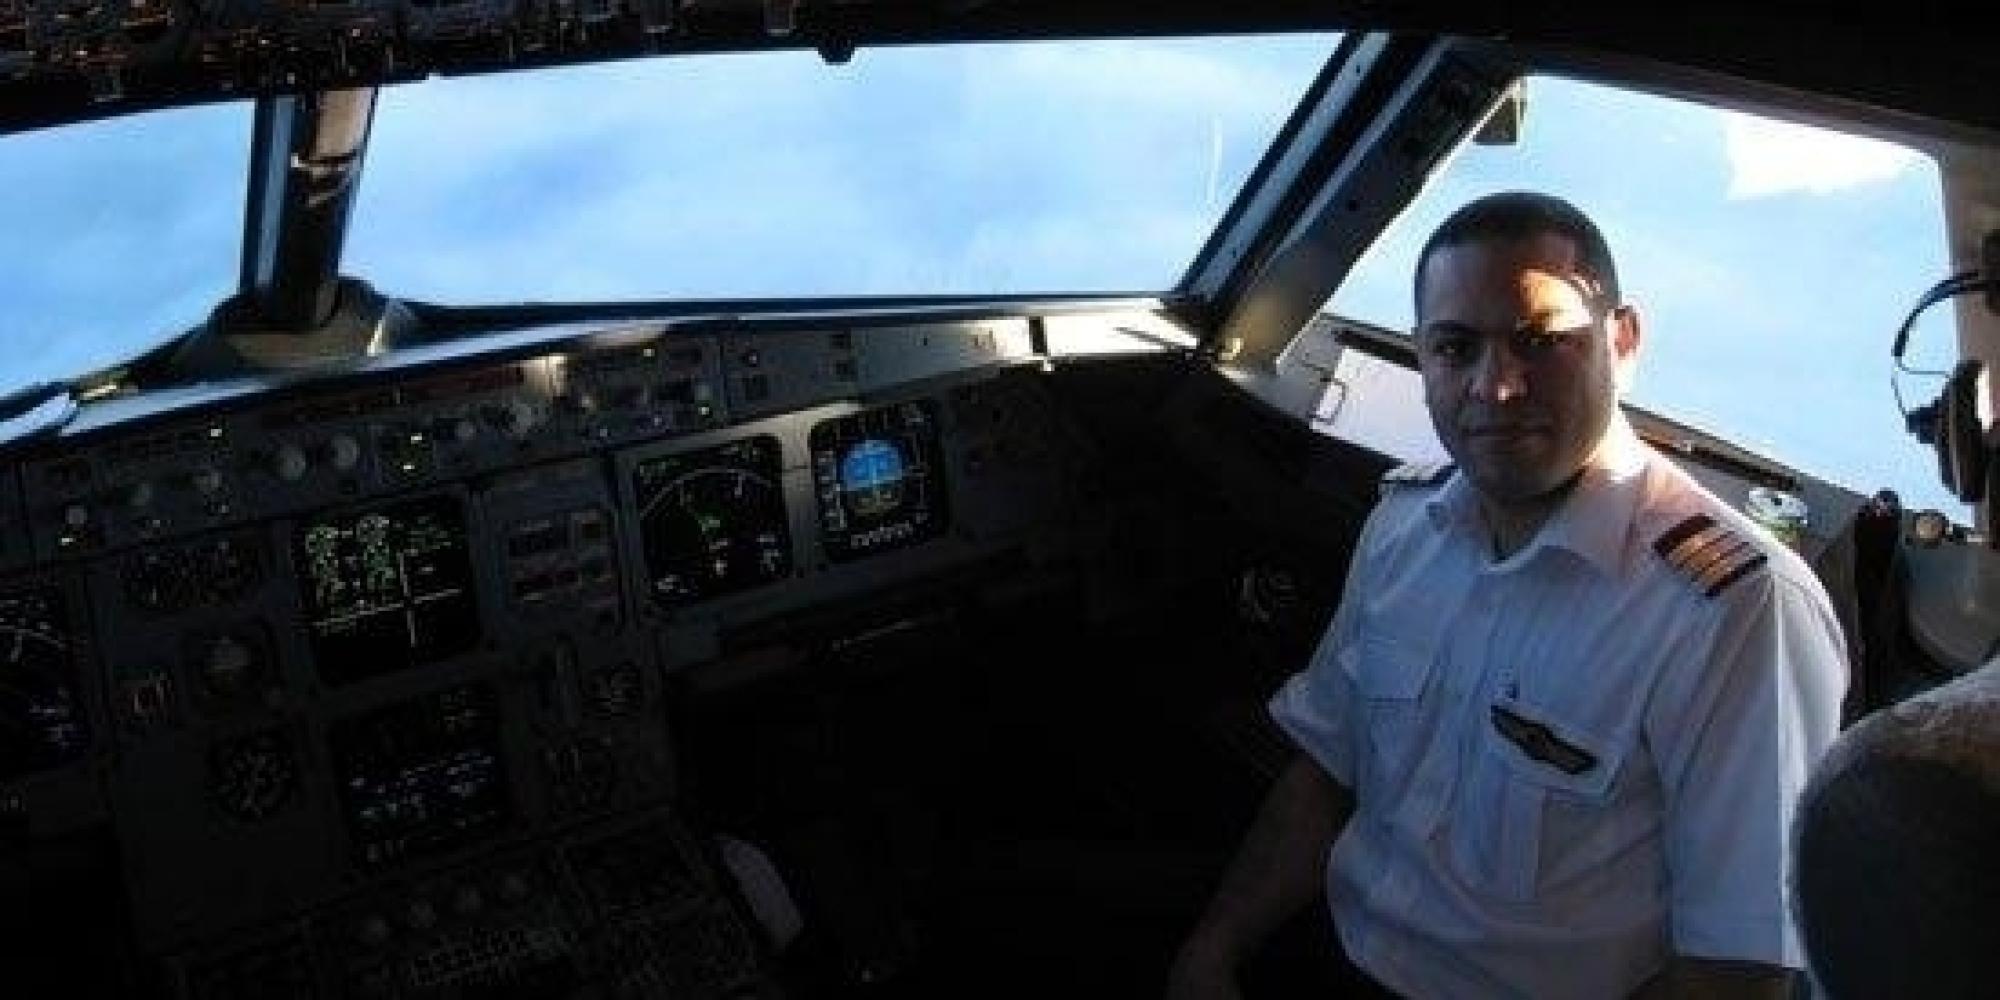 قناة فرنسية: قائد الطائرة المنكوبة أبلغ المراقبة في القاهرة بوجود دخان